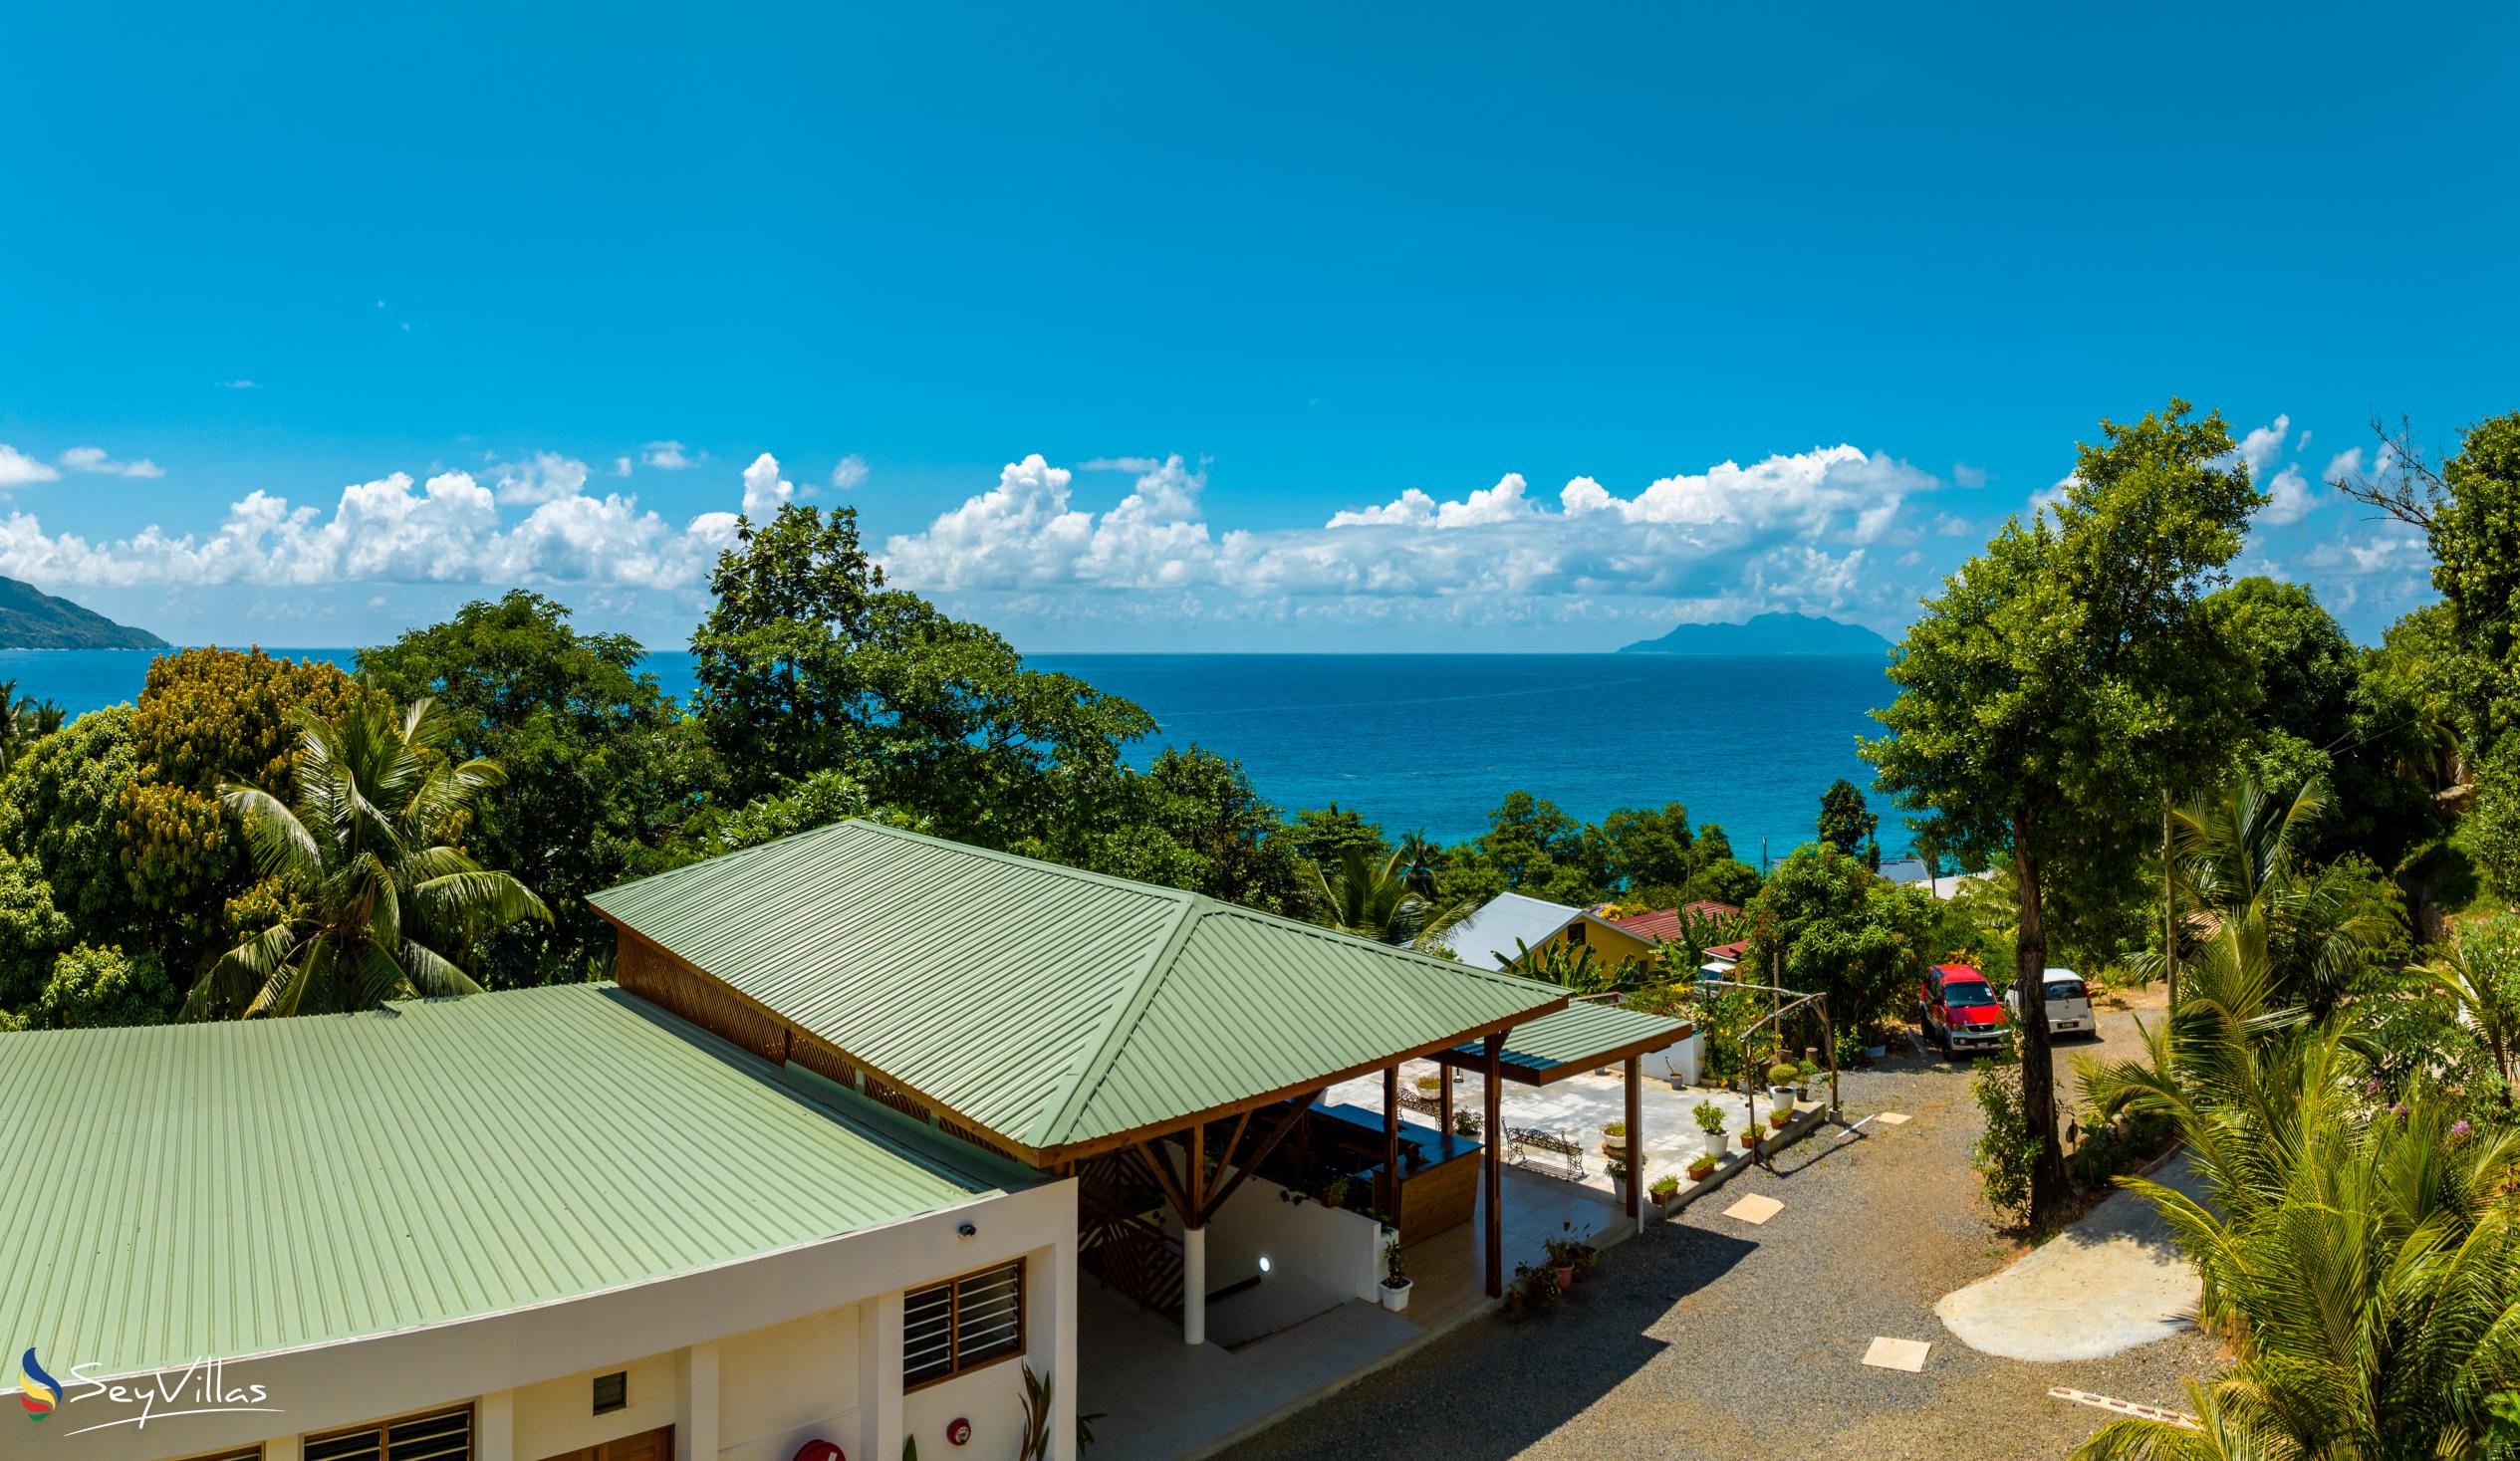 Photo 7: Sunbird Villas - Outdoor area - Mahé (Seychelles)